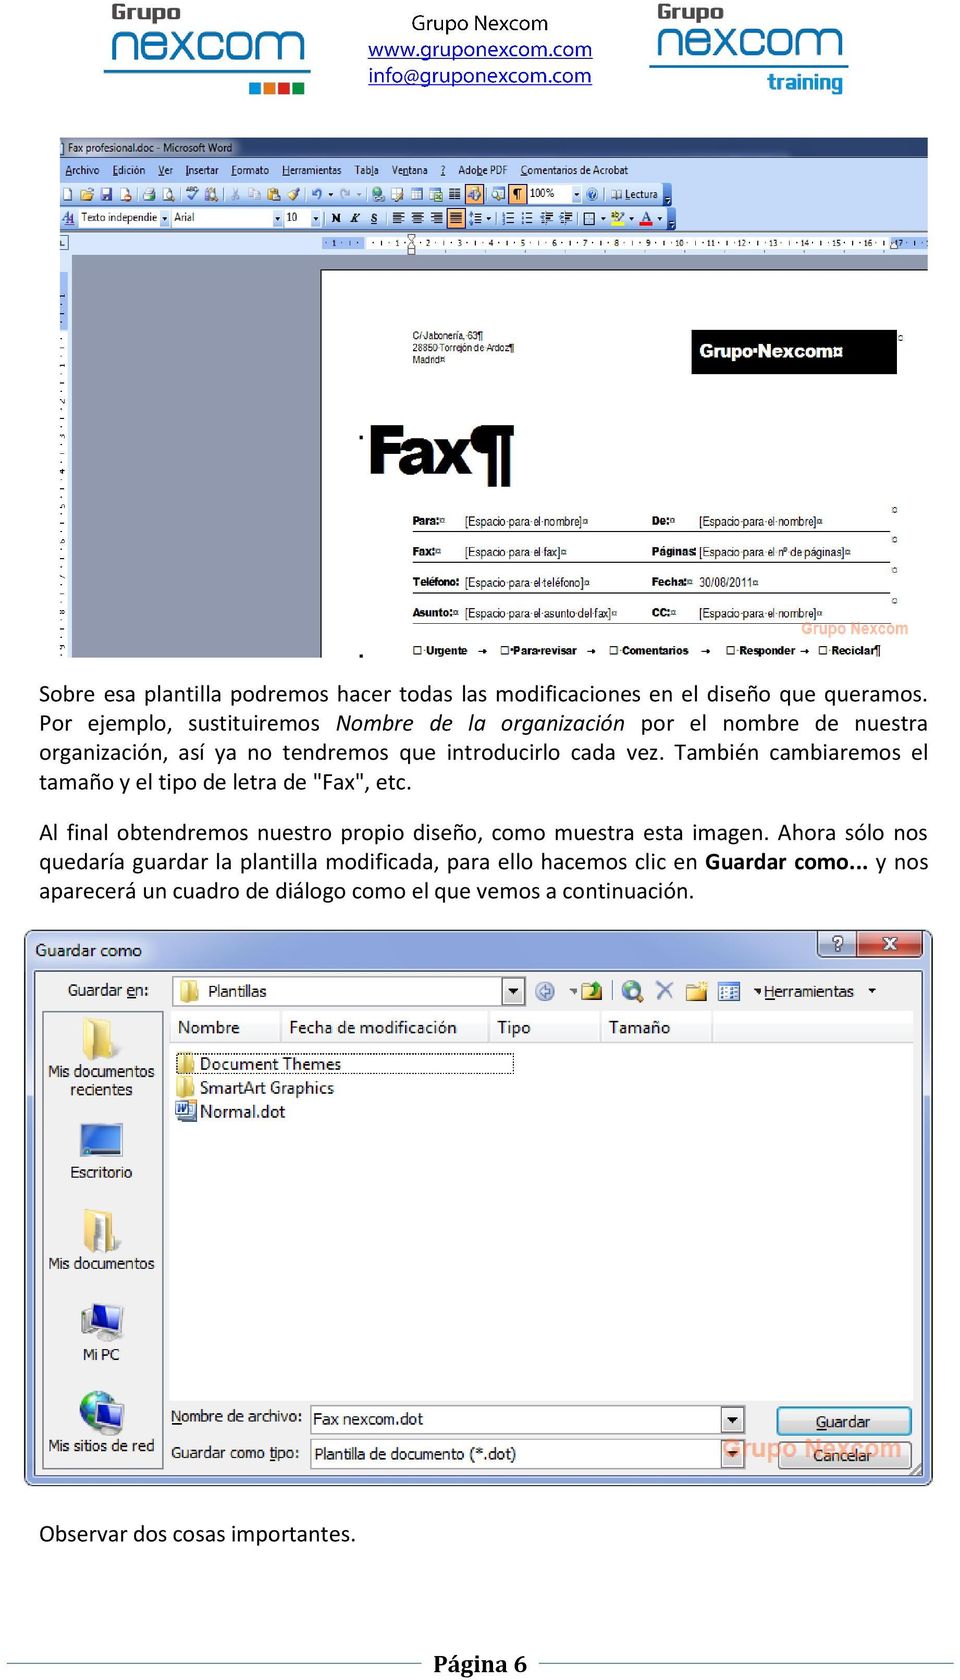 También cambiaremos el tamaño y el tipo de letra de "Fax", etc. Al final obtendremos nuestro propio diseño, como muestra esta imagen.